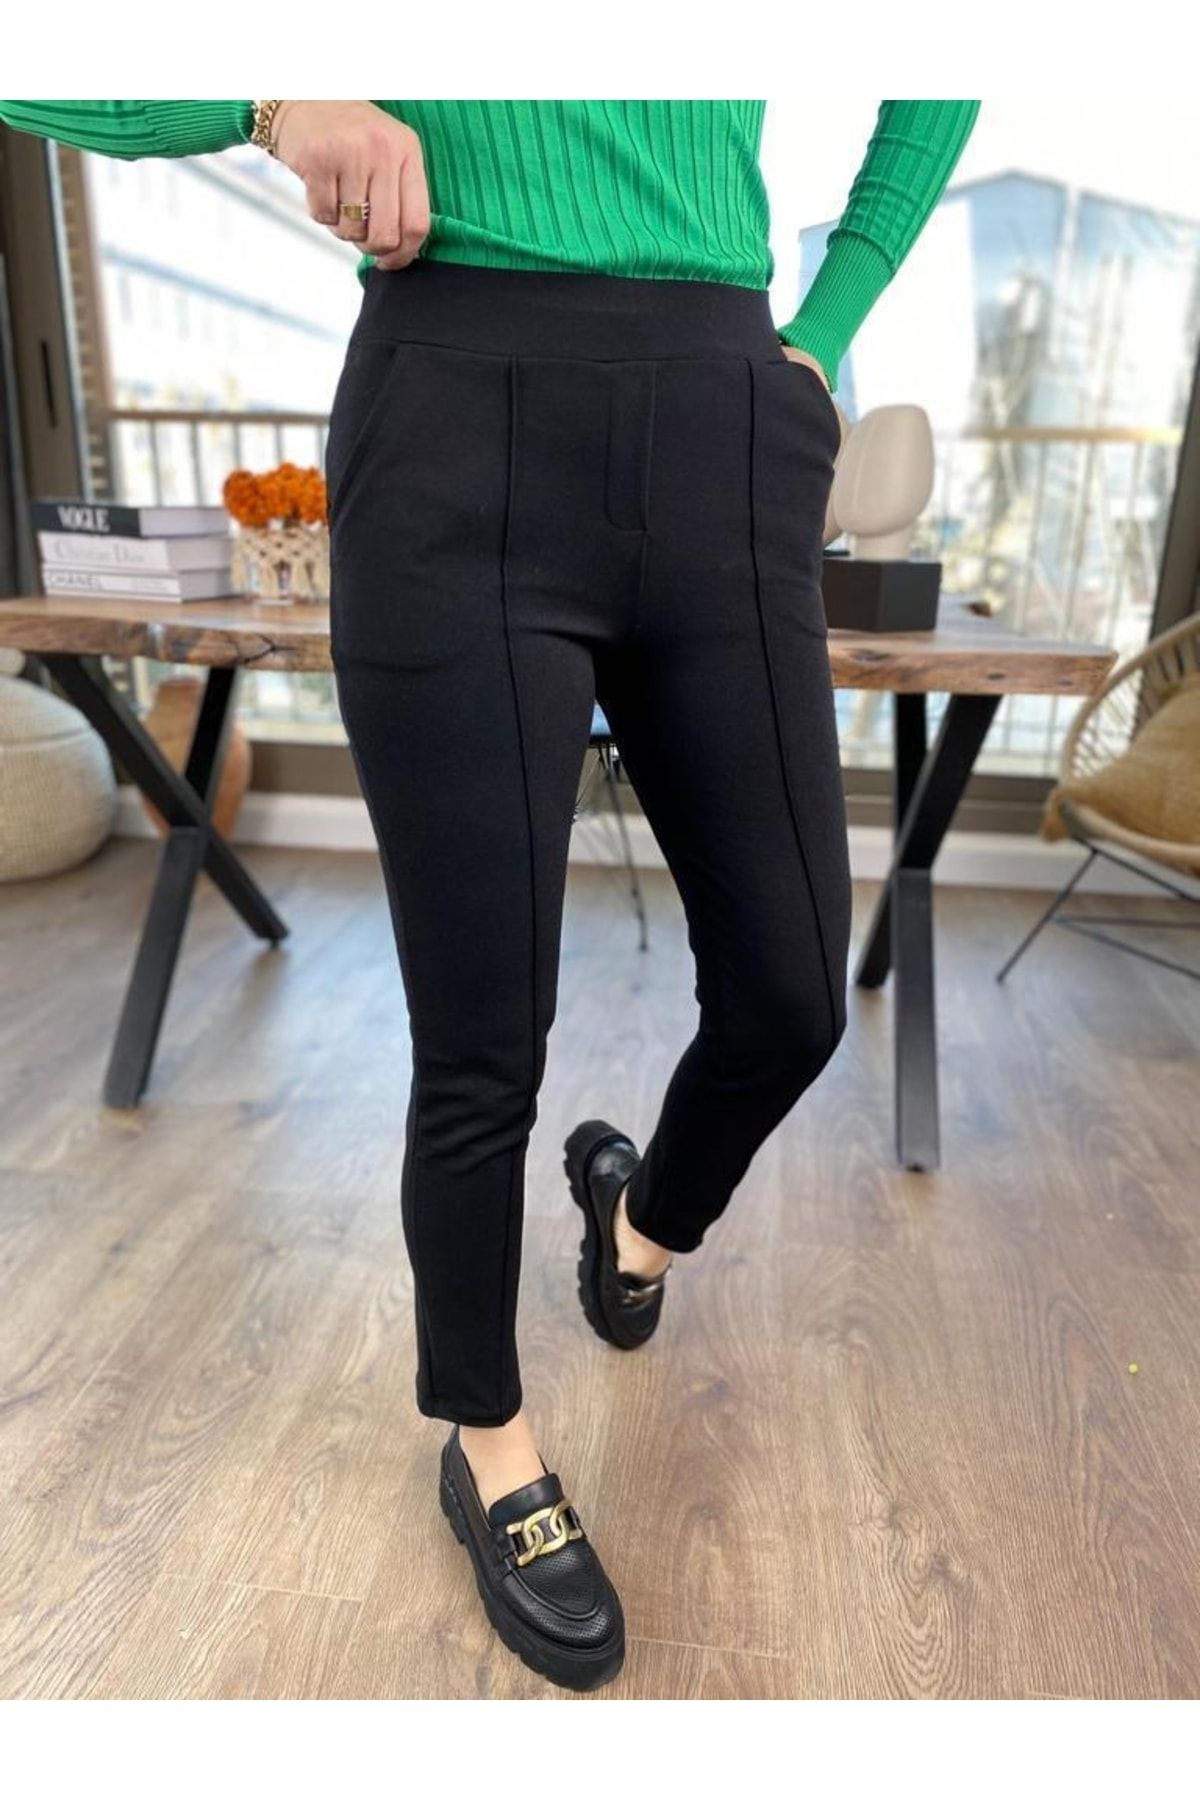 Modagusto Kadın Siyah Krep Kumaş Likralı Çimalı Pantolon